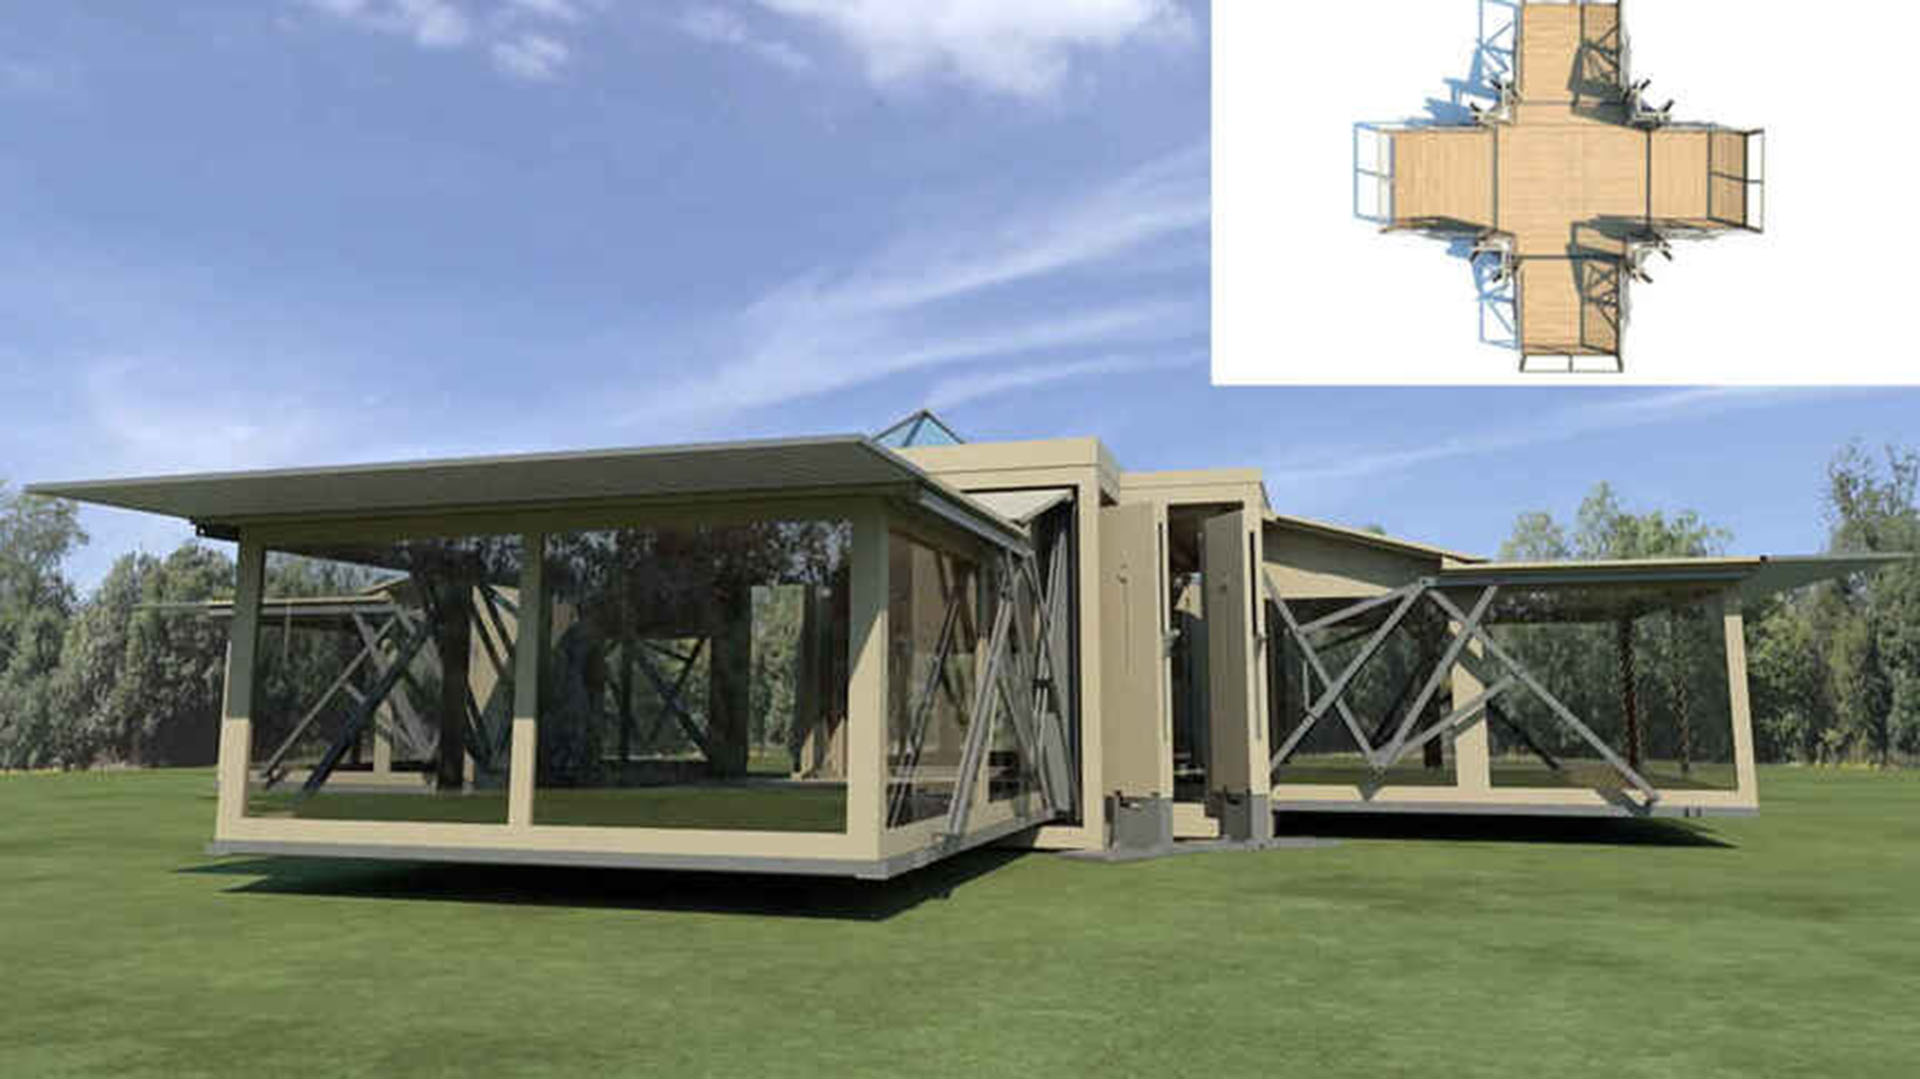 Con brazos extensivos que permiten sostener techos y estructura, futurista en materia edilicia